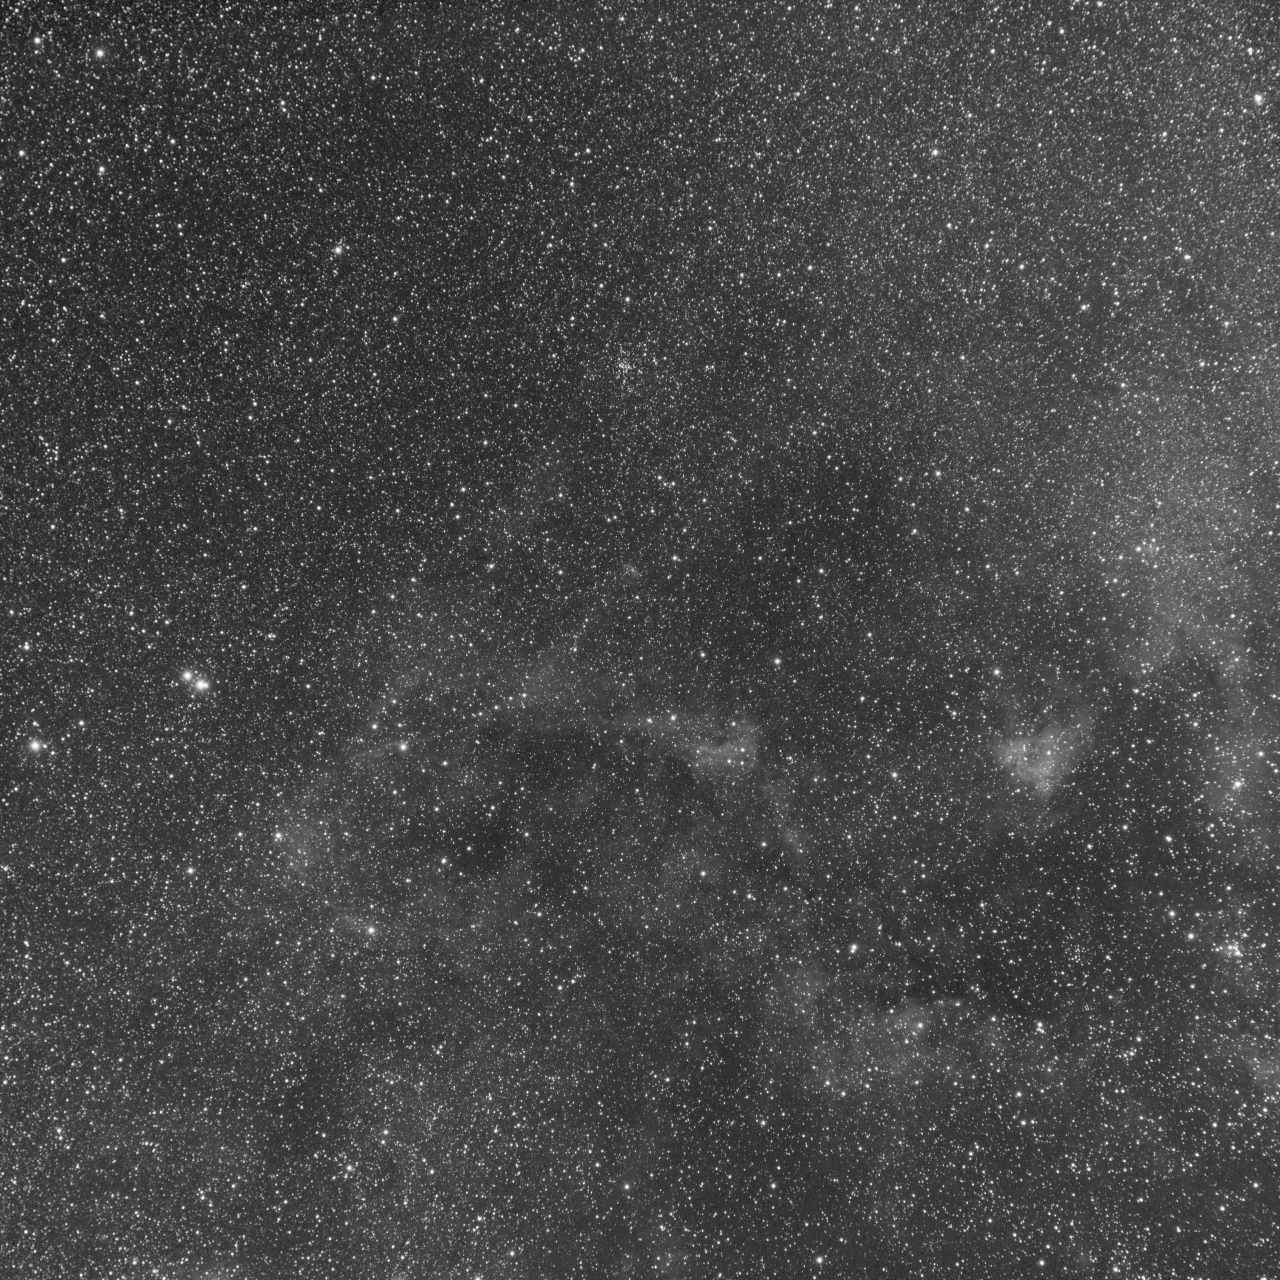 Cygnus near DWB111 - Oiii